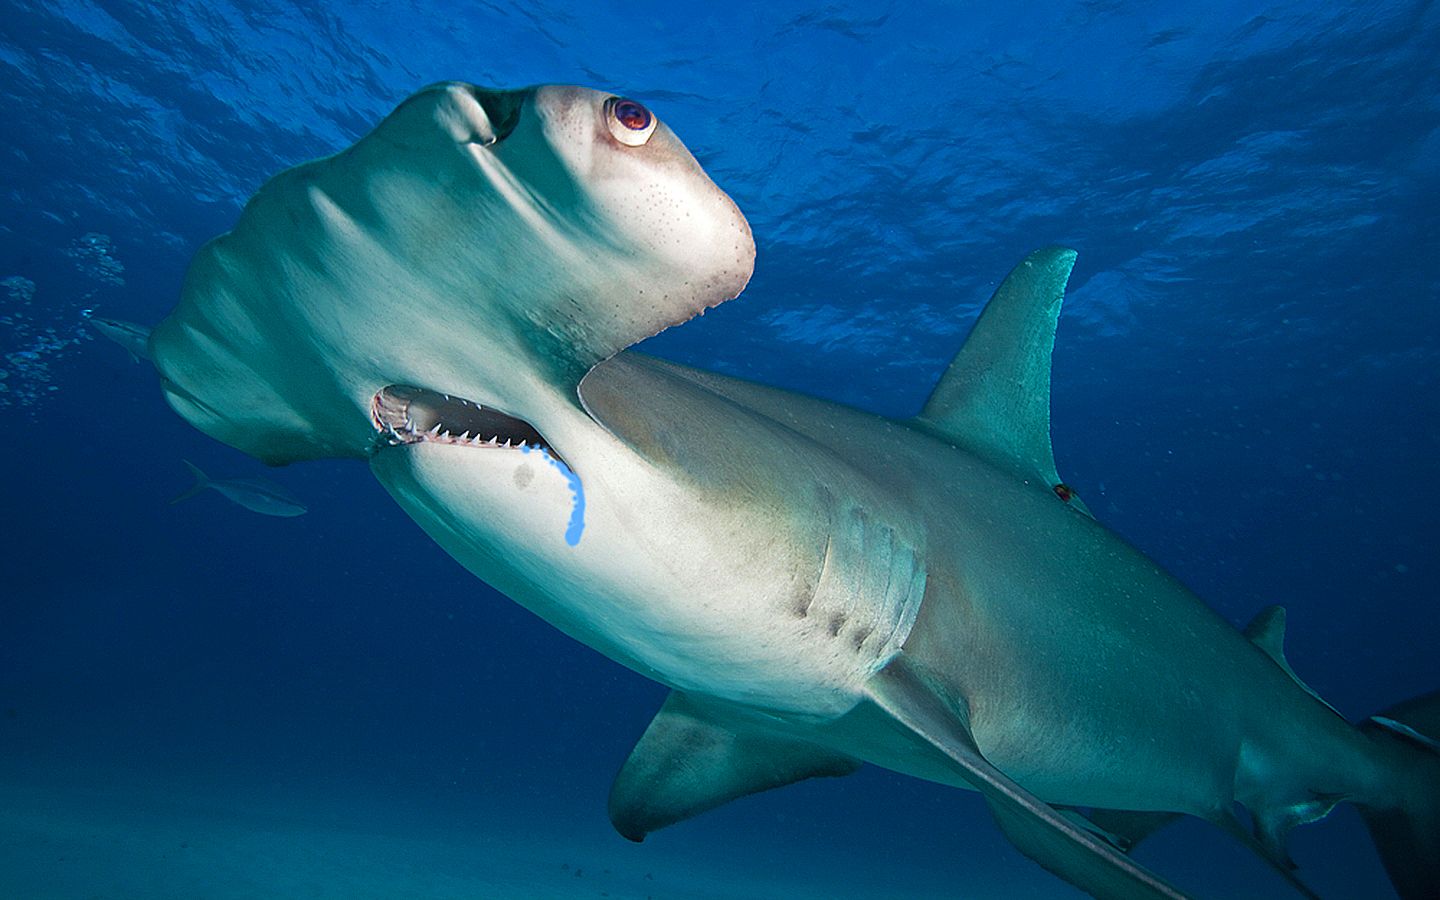 锤头鲨这种憨憨的造型有什么用?